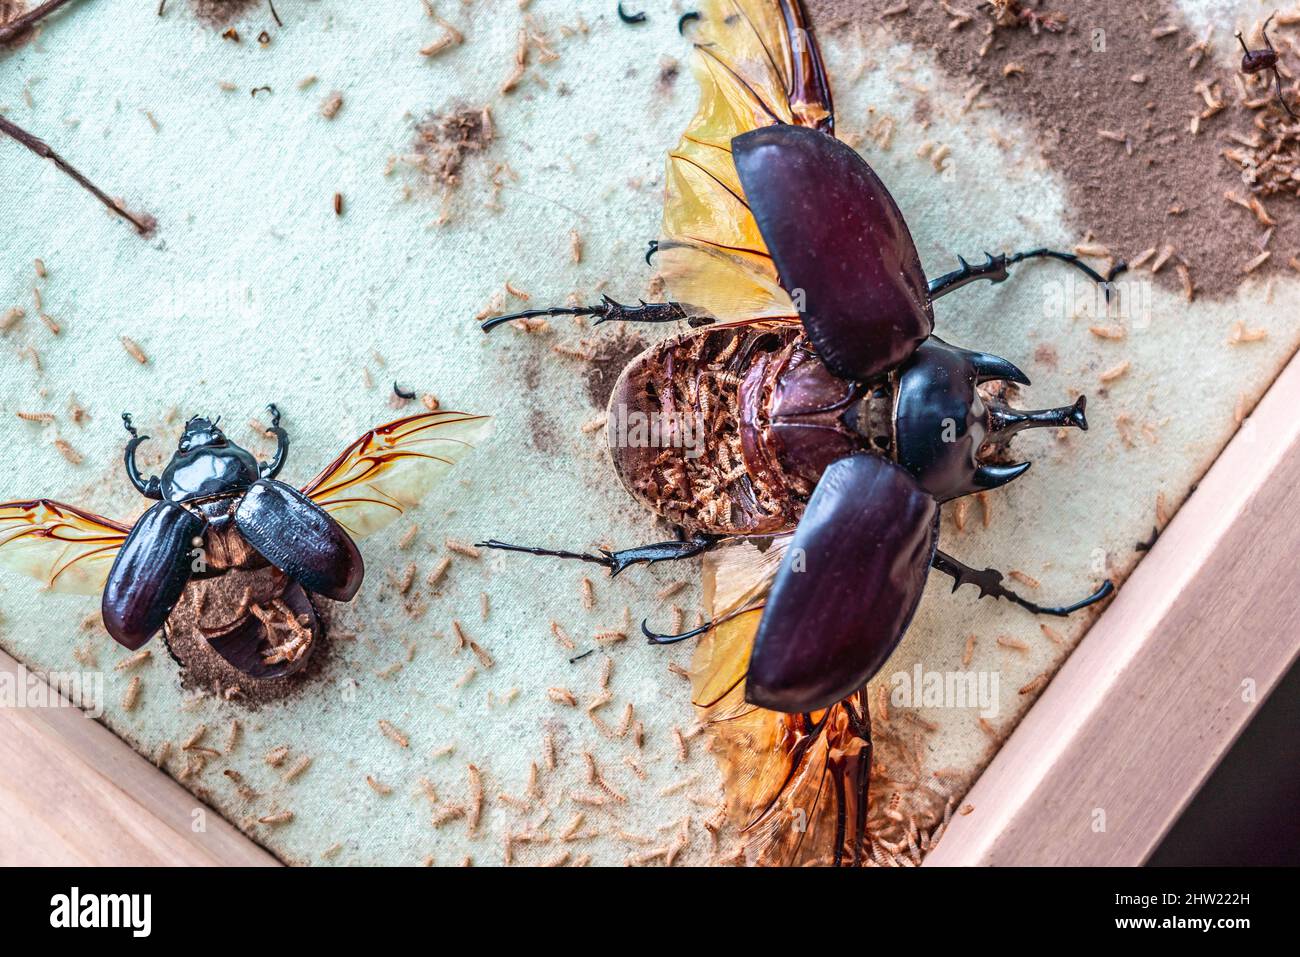 Schöner männlicher Actaeon-Käfer (Megasoma actaeon), der von tausenden von Teppichkäfer-Larven (Anthrenus verbasci) zerstört wurde. Vollständig gefressen Bauch. Stockfoto